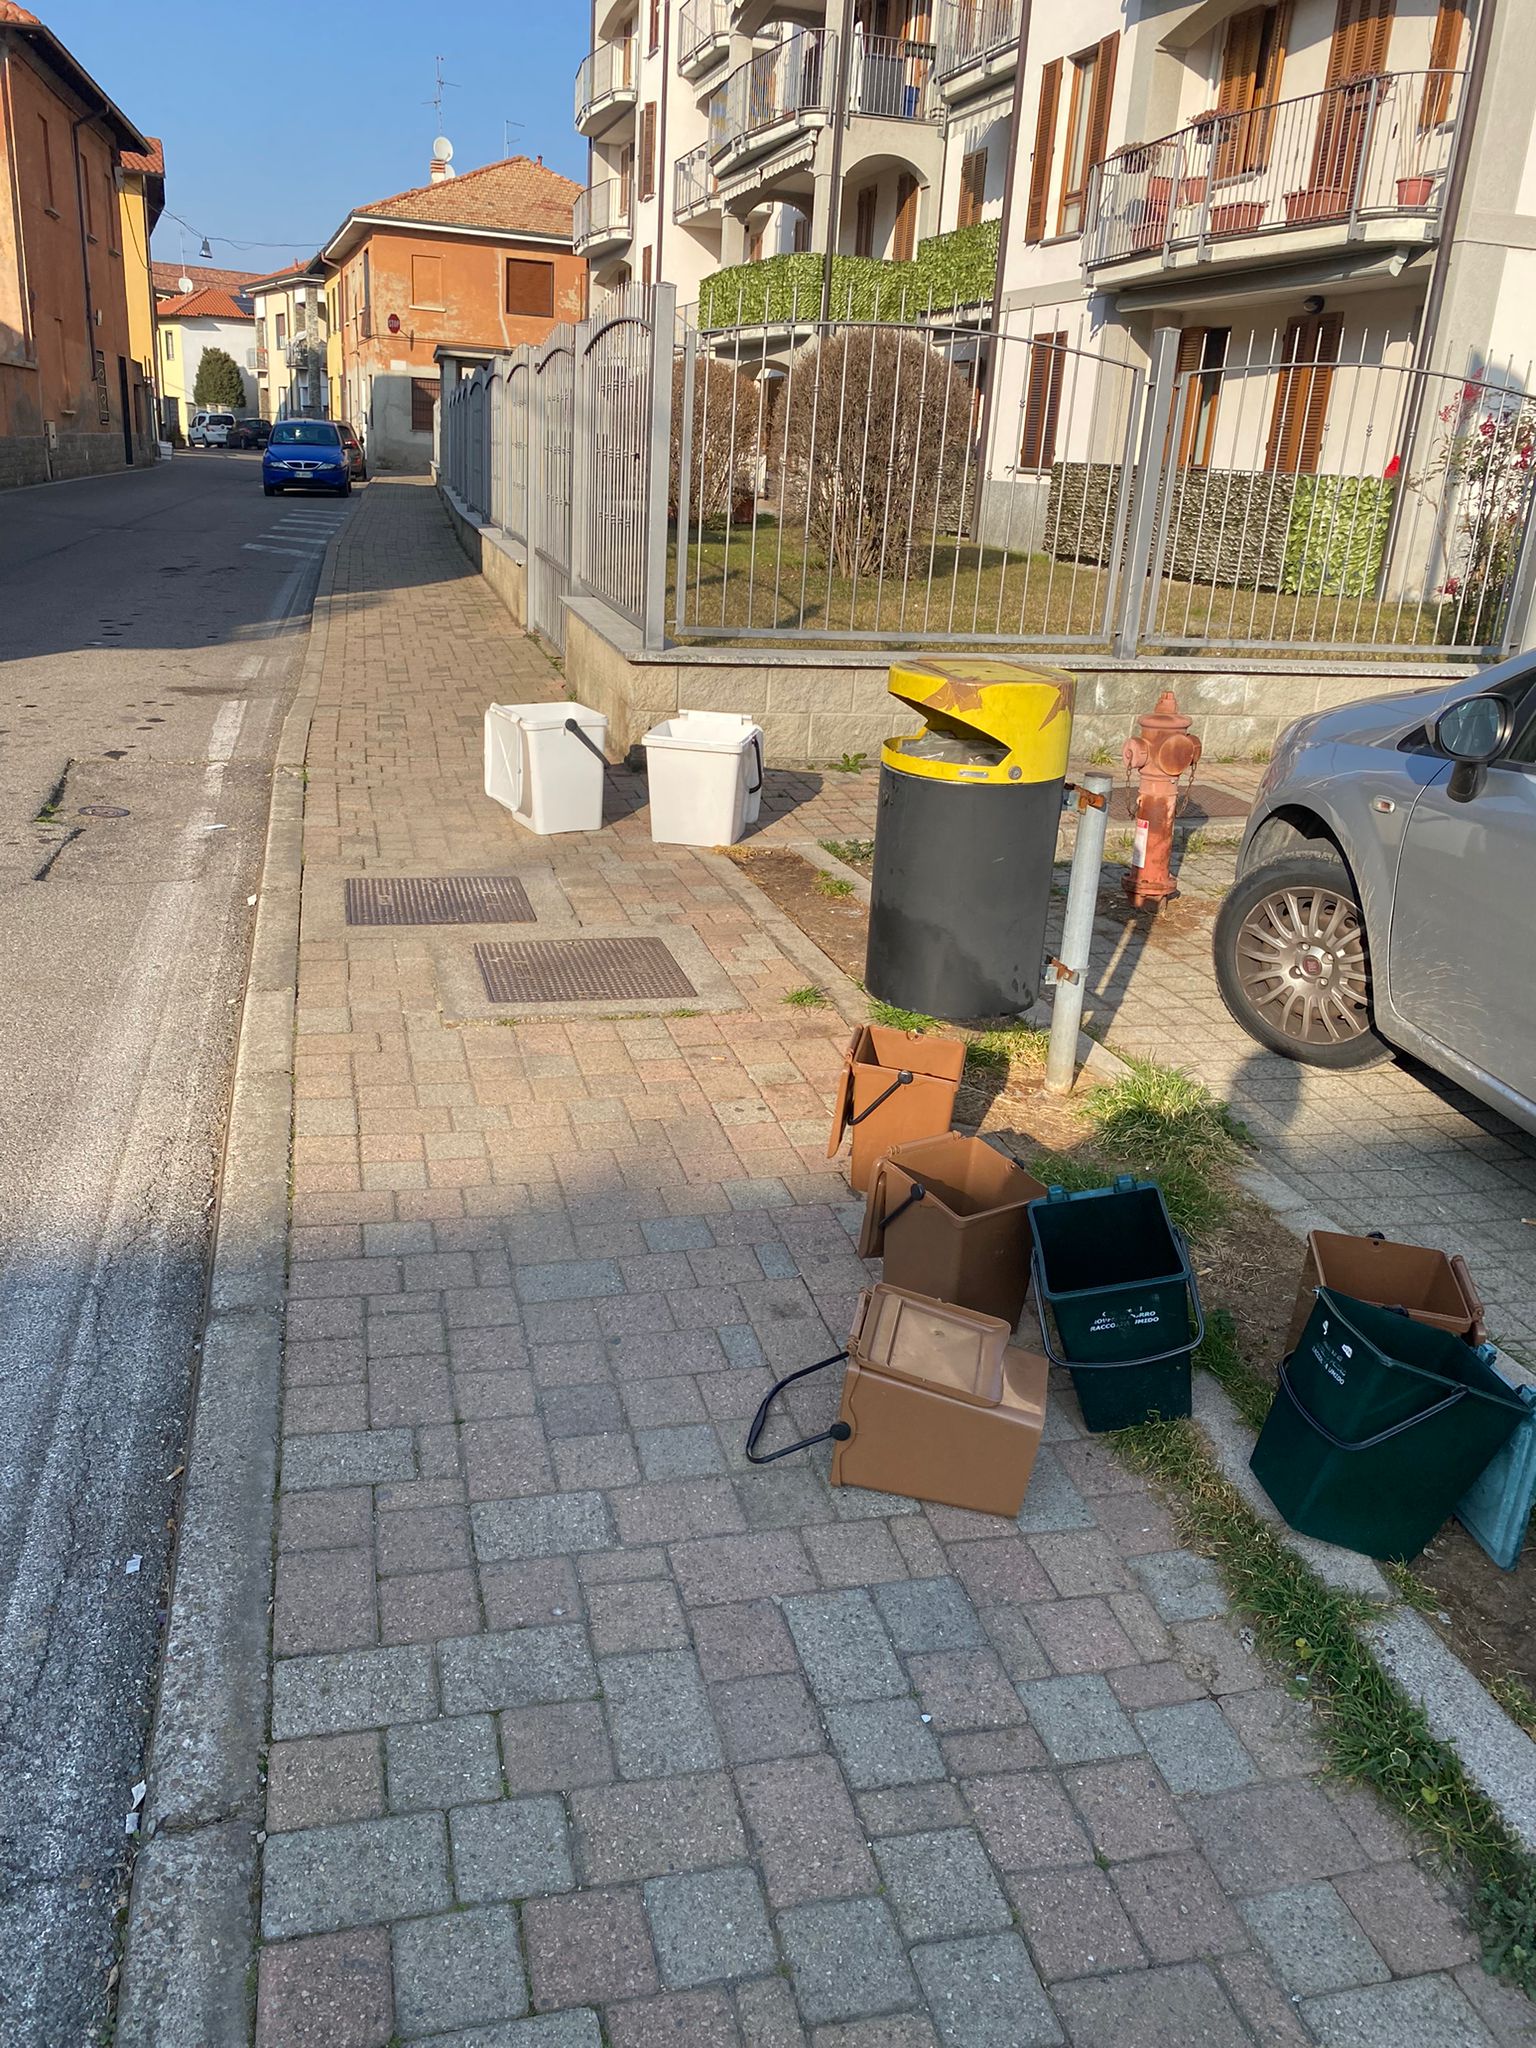 Rovello ripulita dai rifiuti sbagliati lasciati in strada